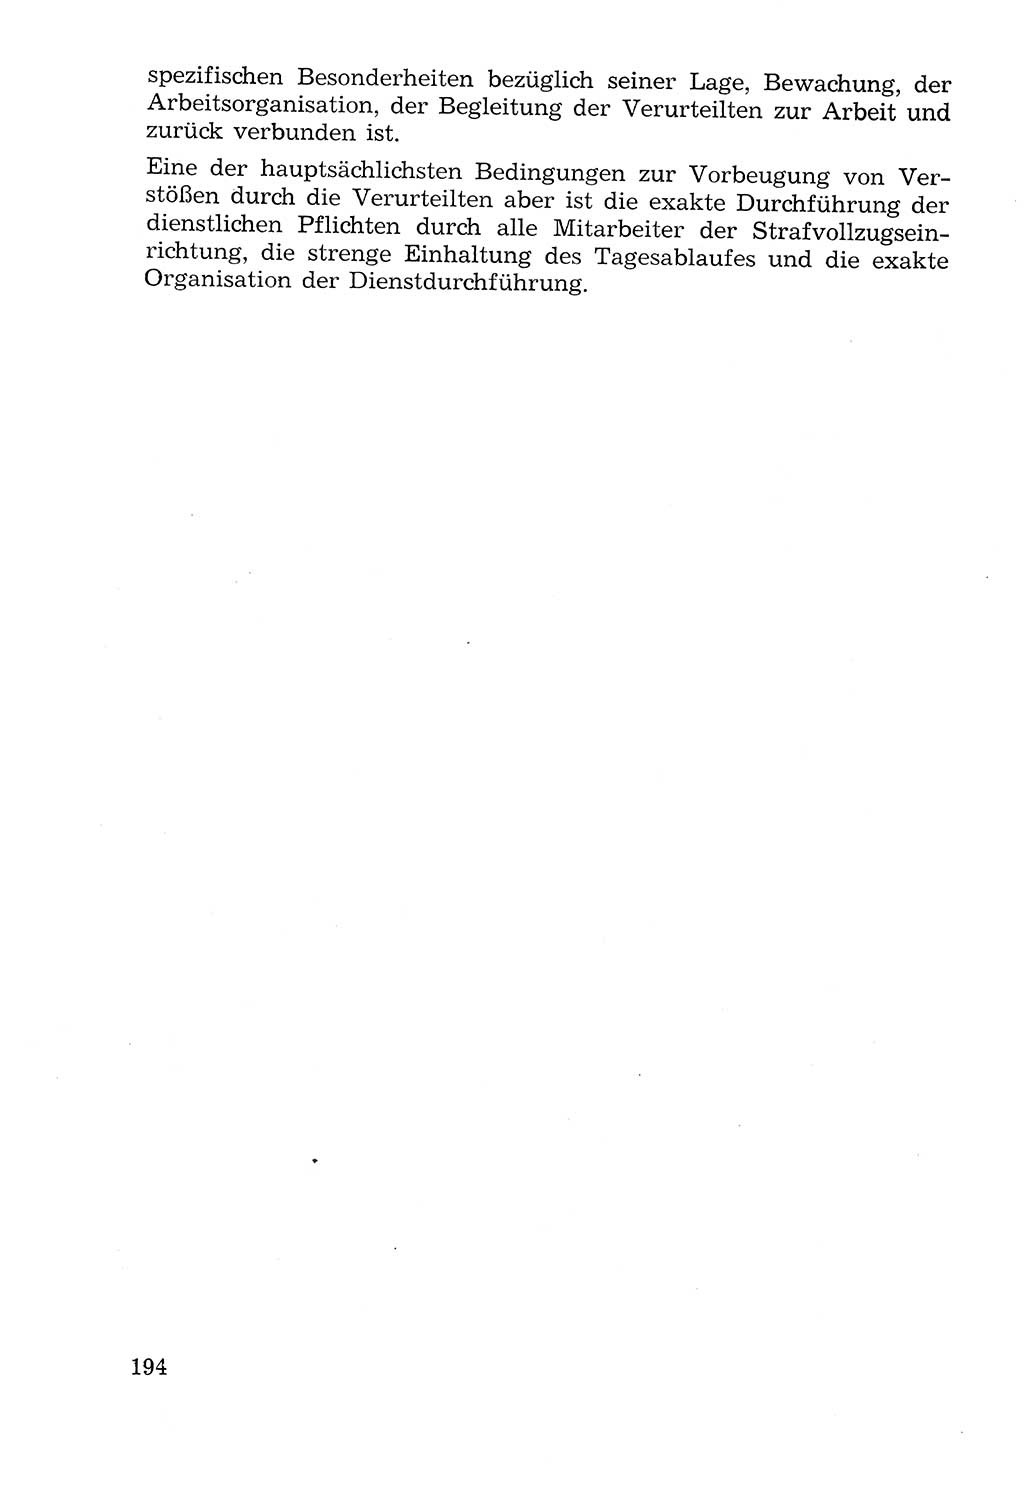 Lehrbuch der Strafvollzugspädagogik [Deutsche Demokratische Republik (DDR)] 1969, Seite 194 (Lb. SV-Pd. DDR 1969, S. 194)